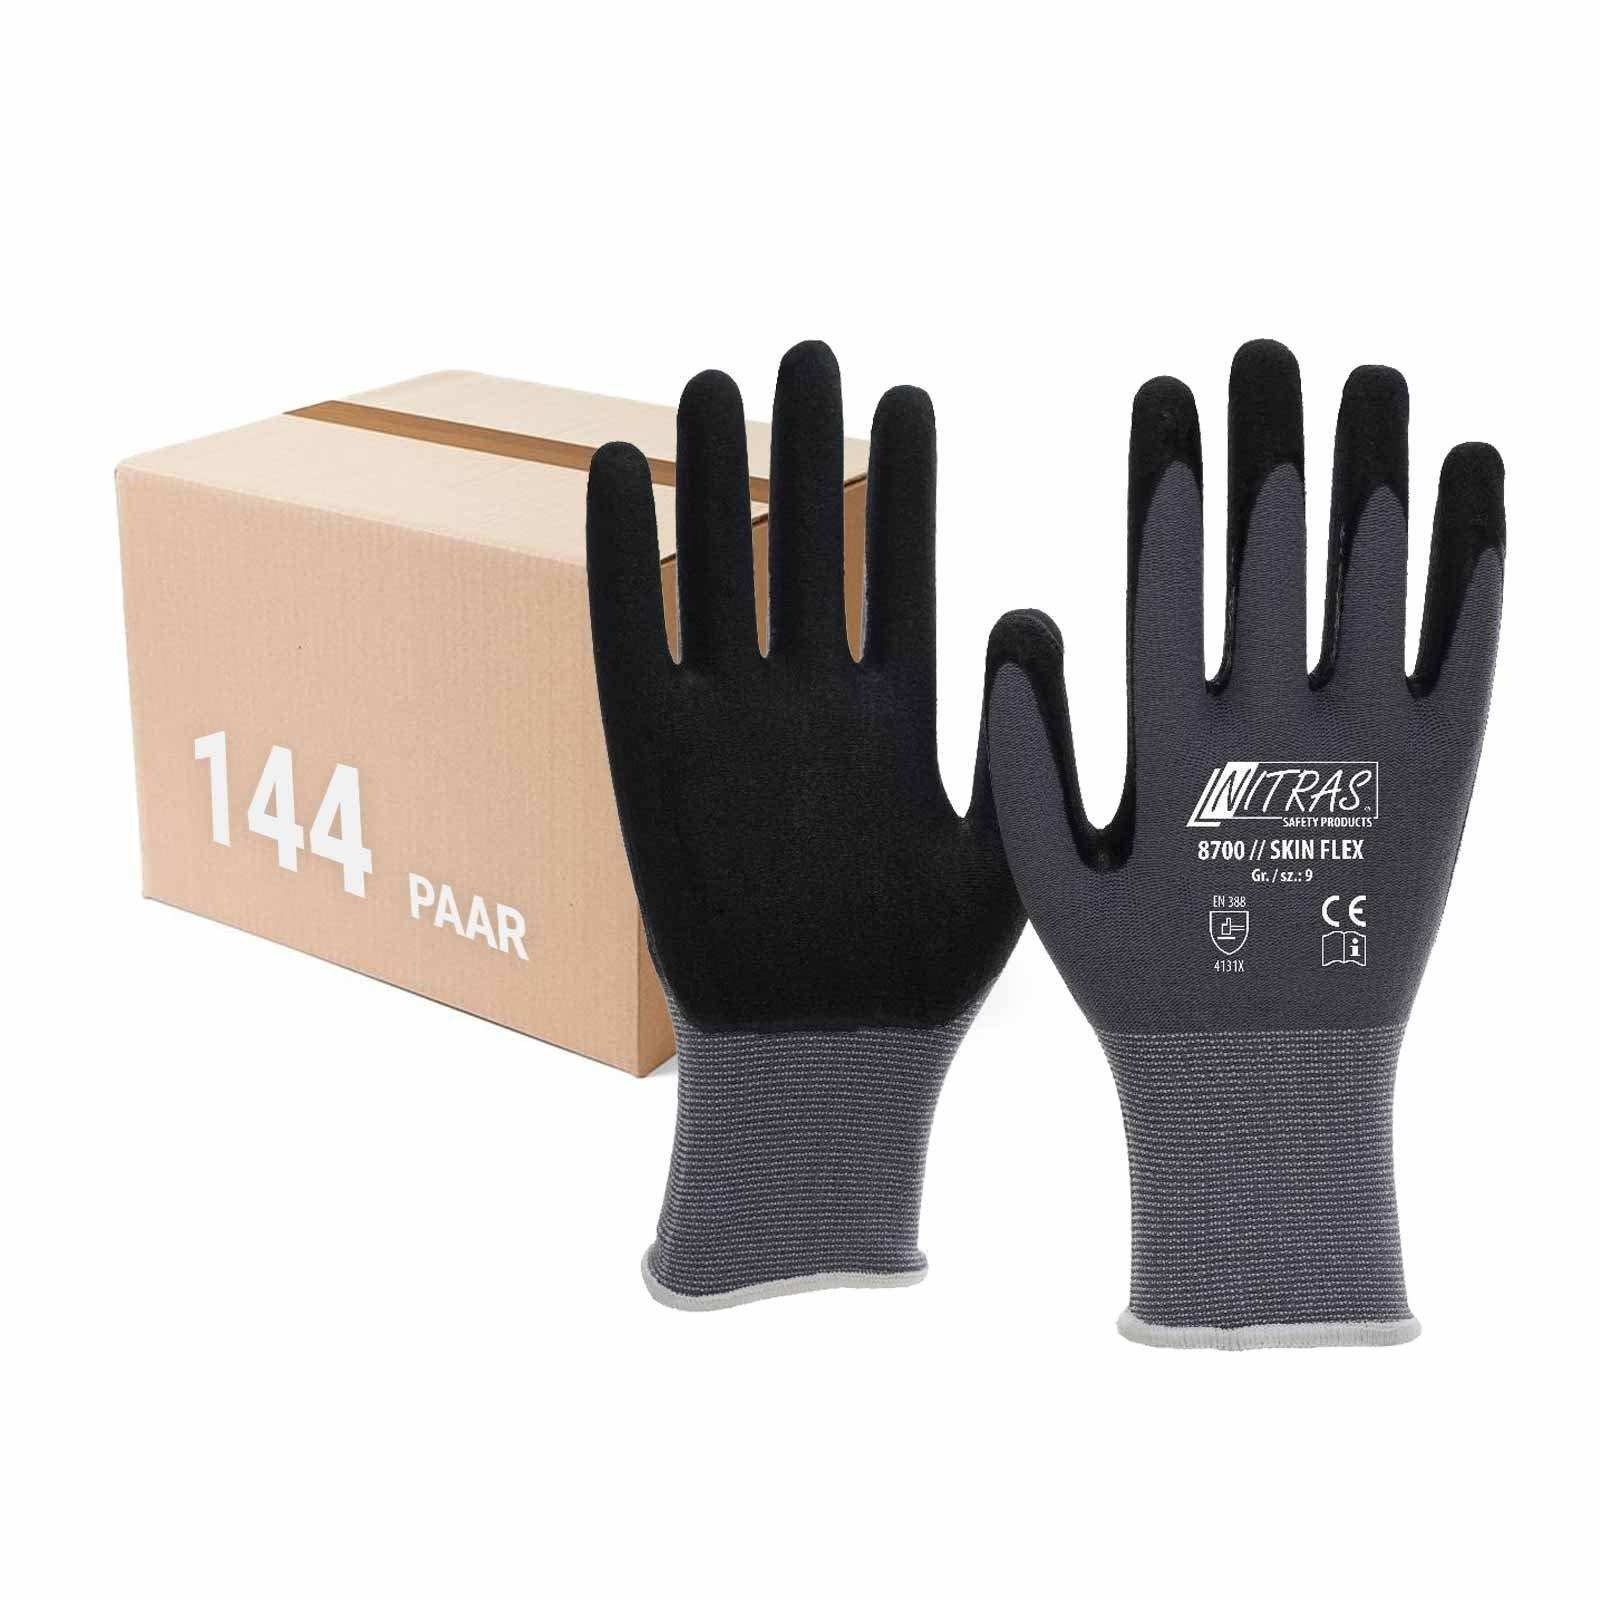 Nitras Nitril-Handschuhe Skin-Flex Strickhandschuhe 8700 gestrickte Handschuhe- 144 Paar (Spar-Set)